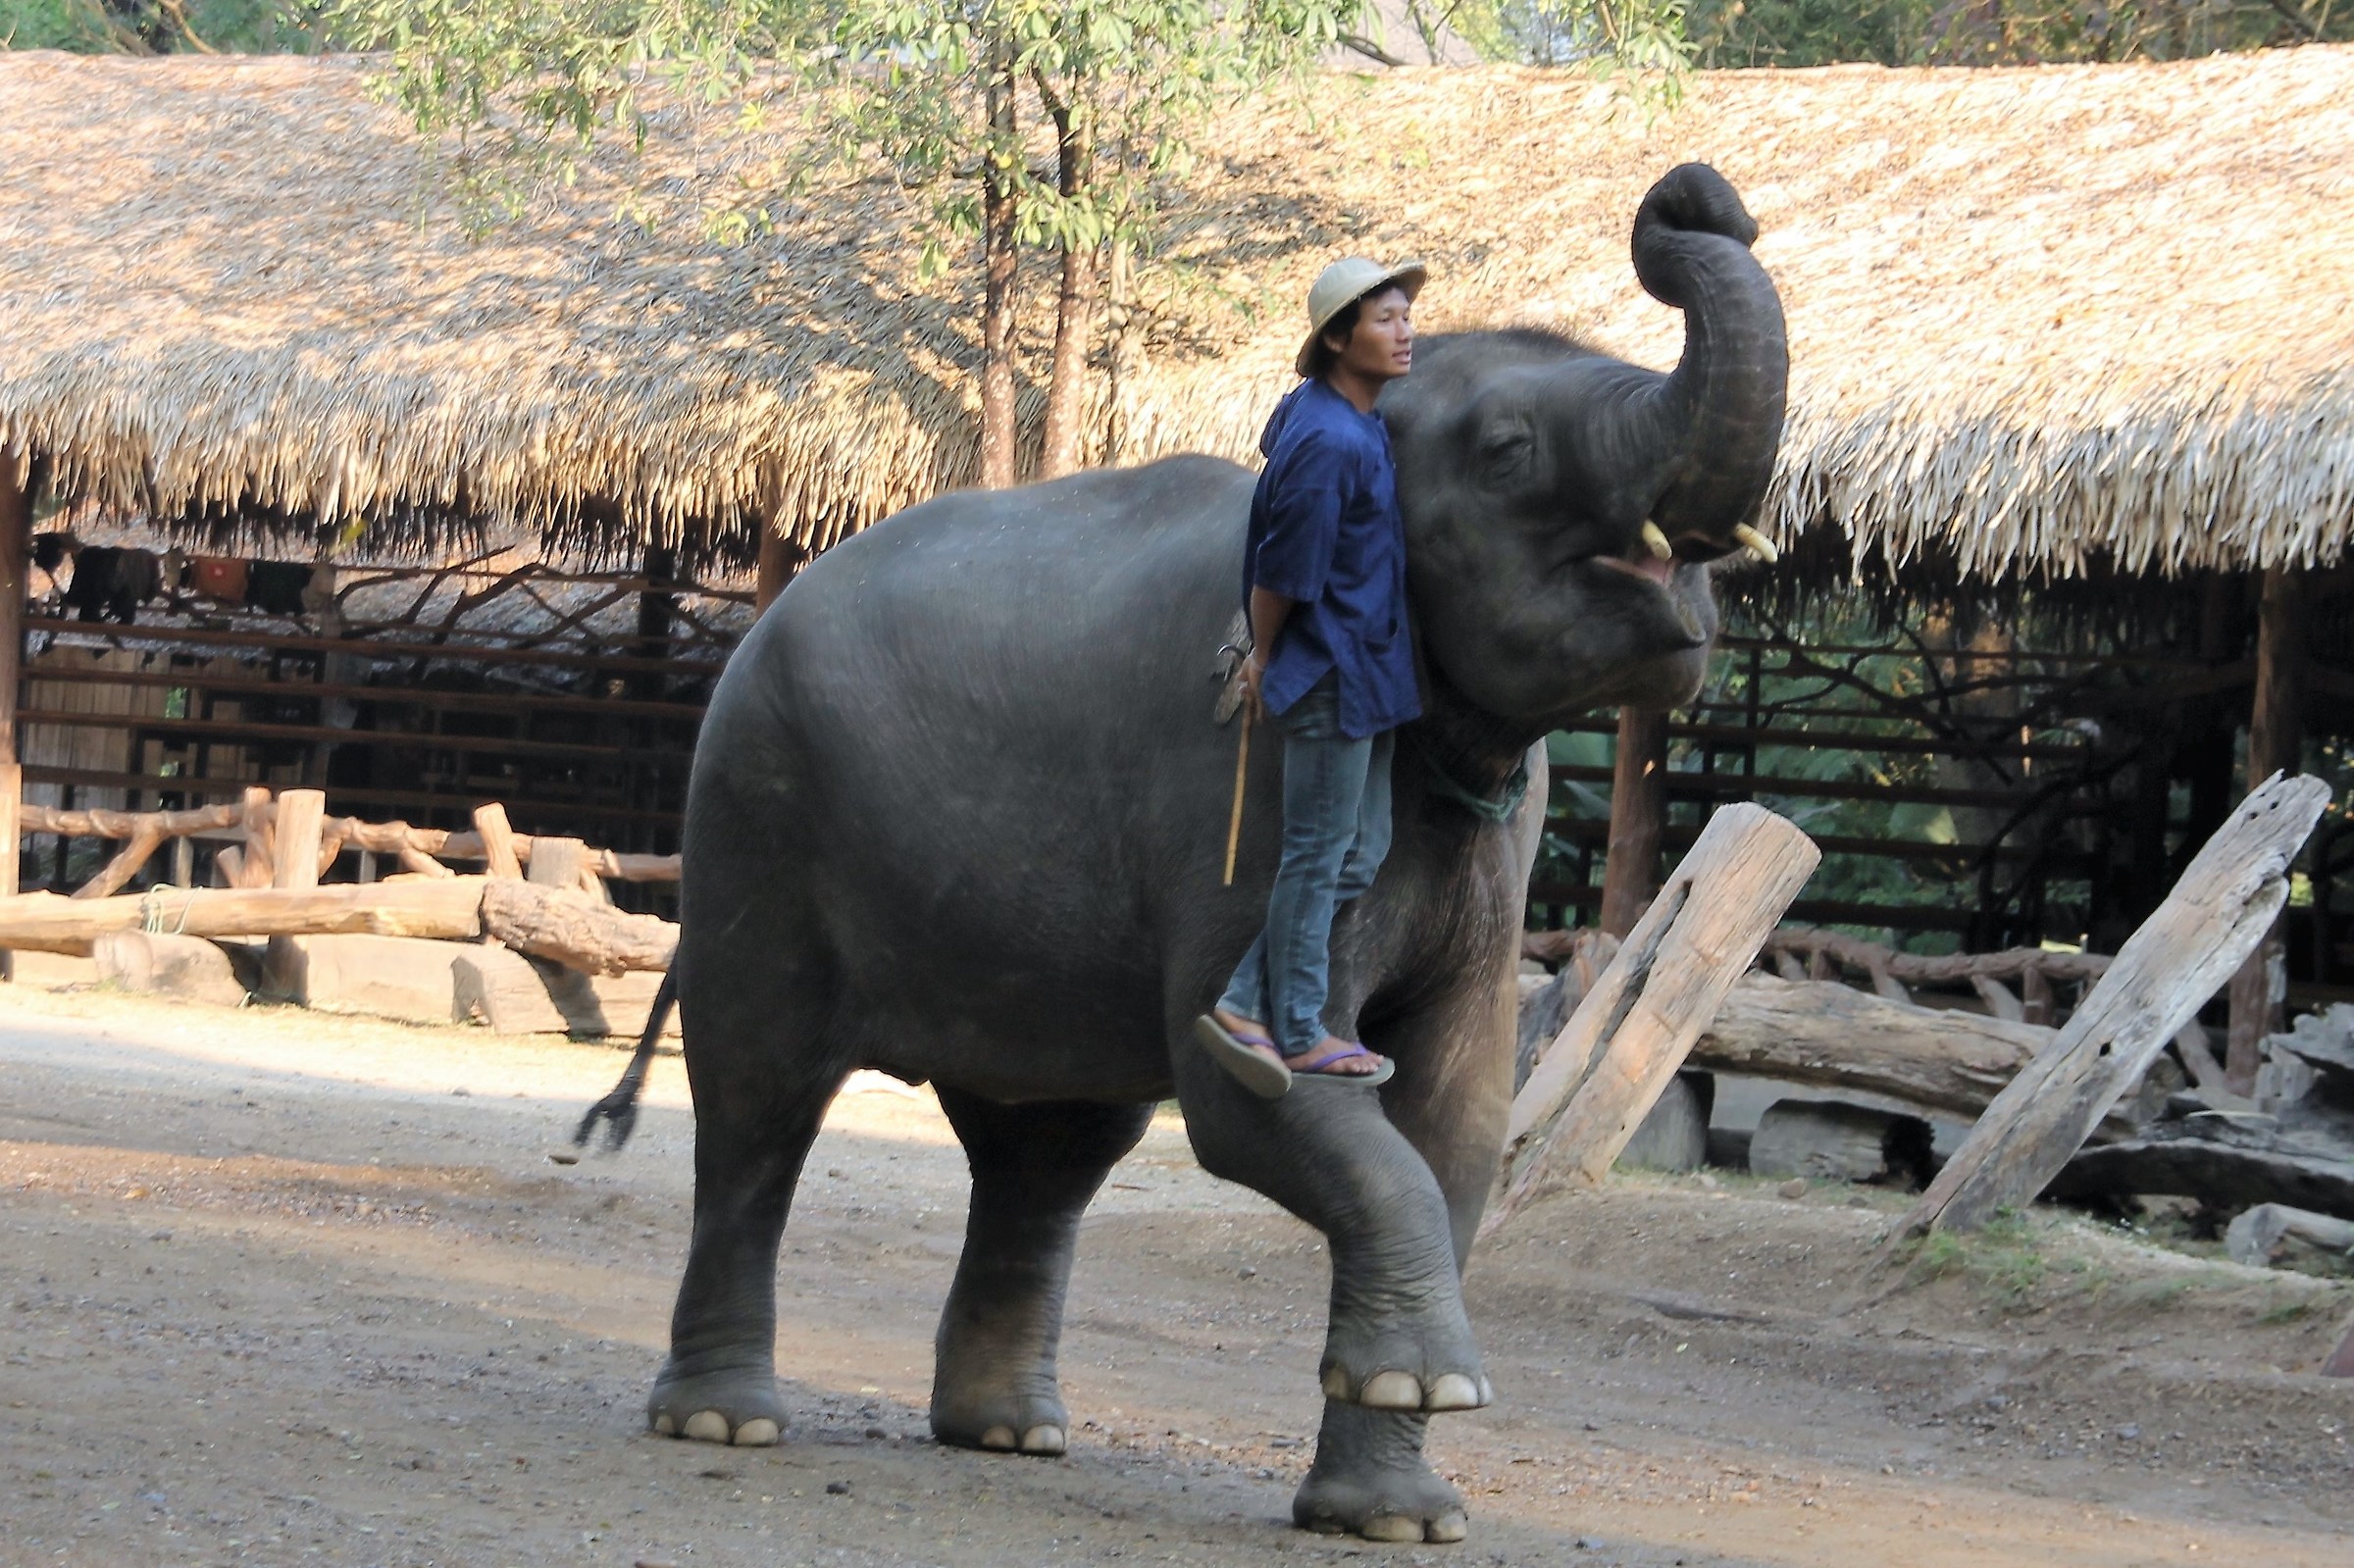 Addestratore di elefanti...